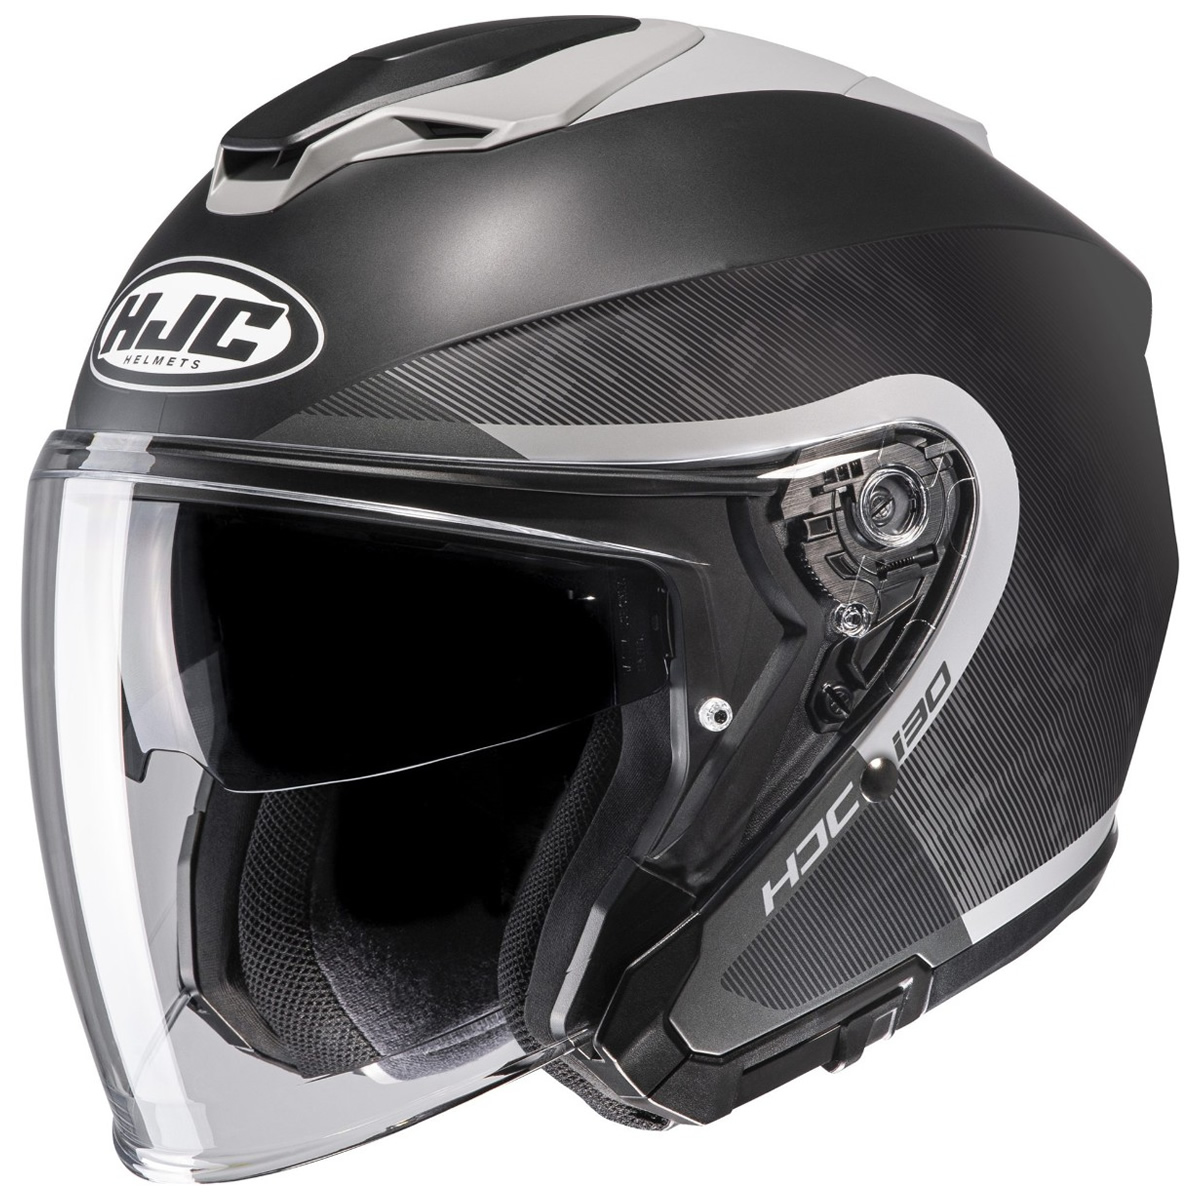 HJC Helm i30 Dexta, schwarz-grau matt